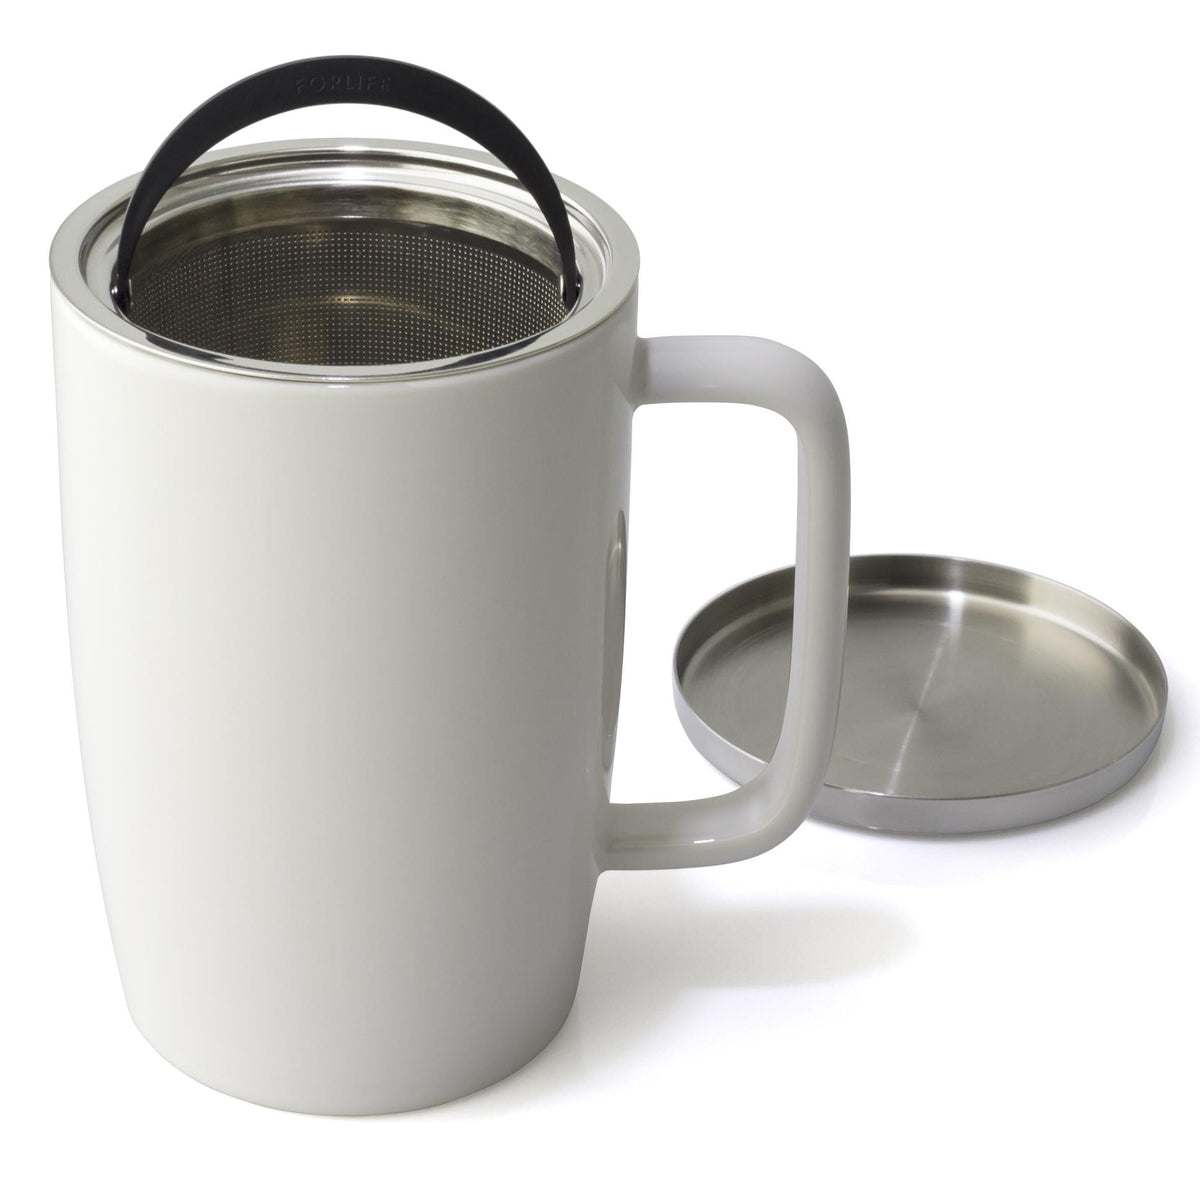 FORLIFE Mug With Basket Infuser and Stainless Steel Lid : Matte Lavender Mist